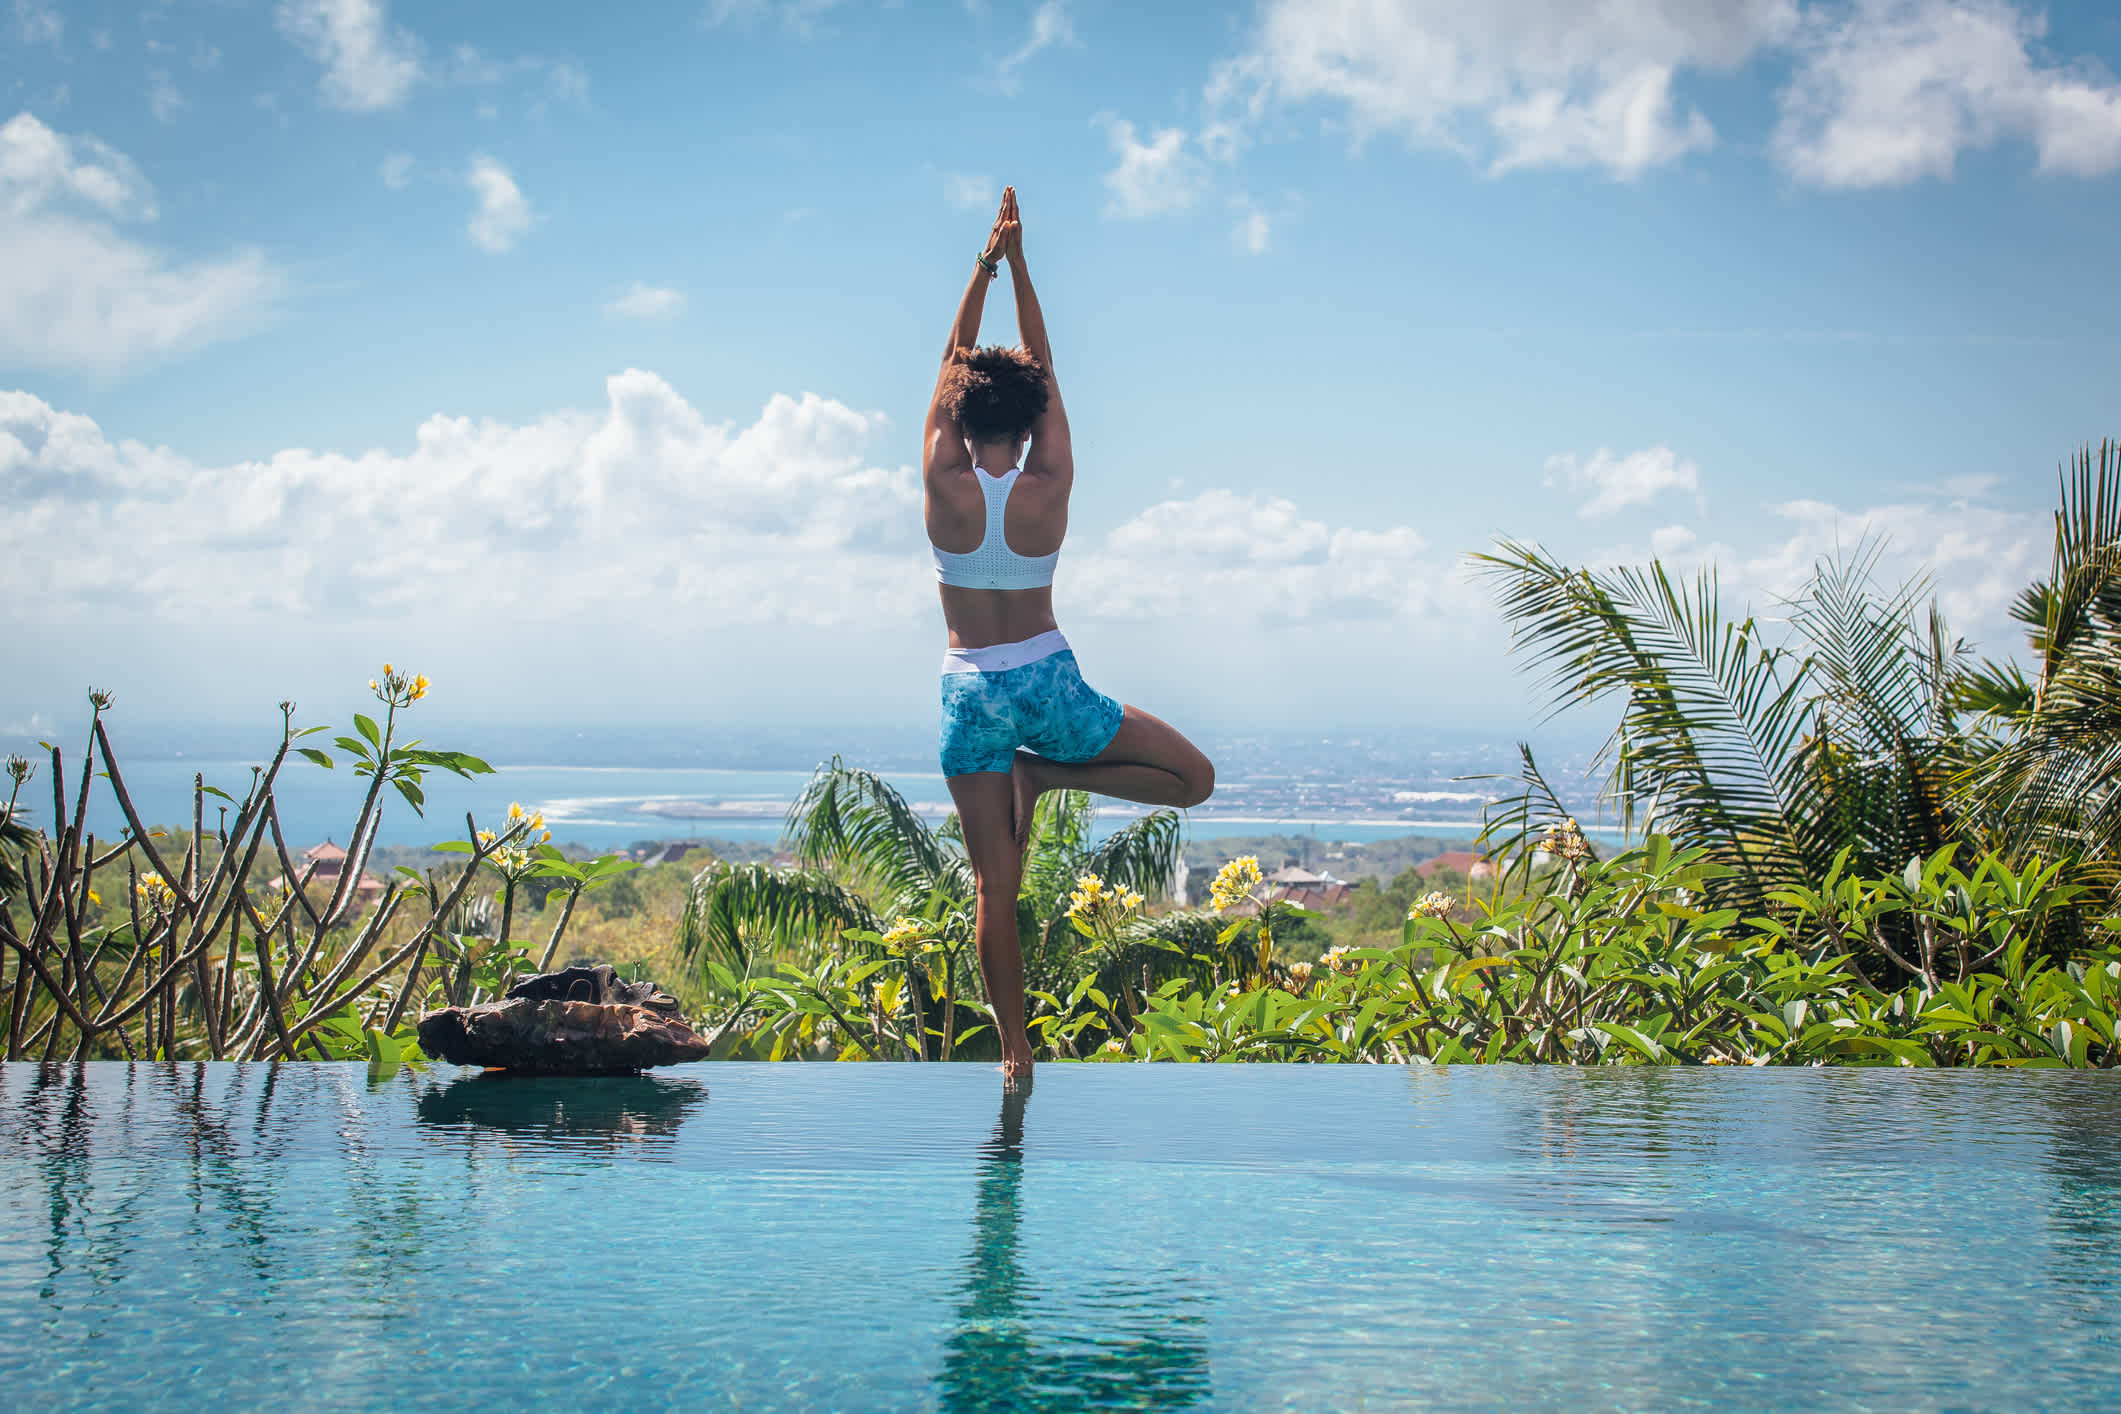 Une femme pratique le yoga au bord d'une piscine à débordement à Bali, en Indonésie.

